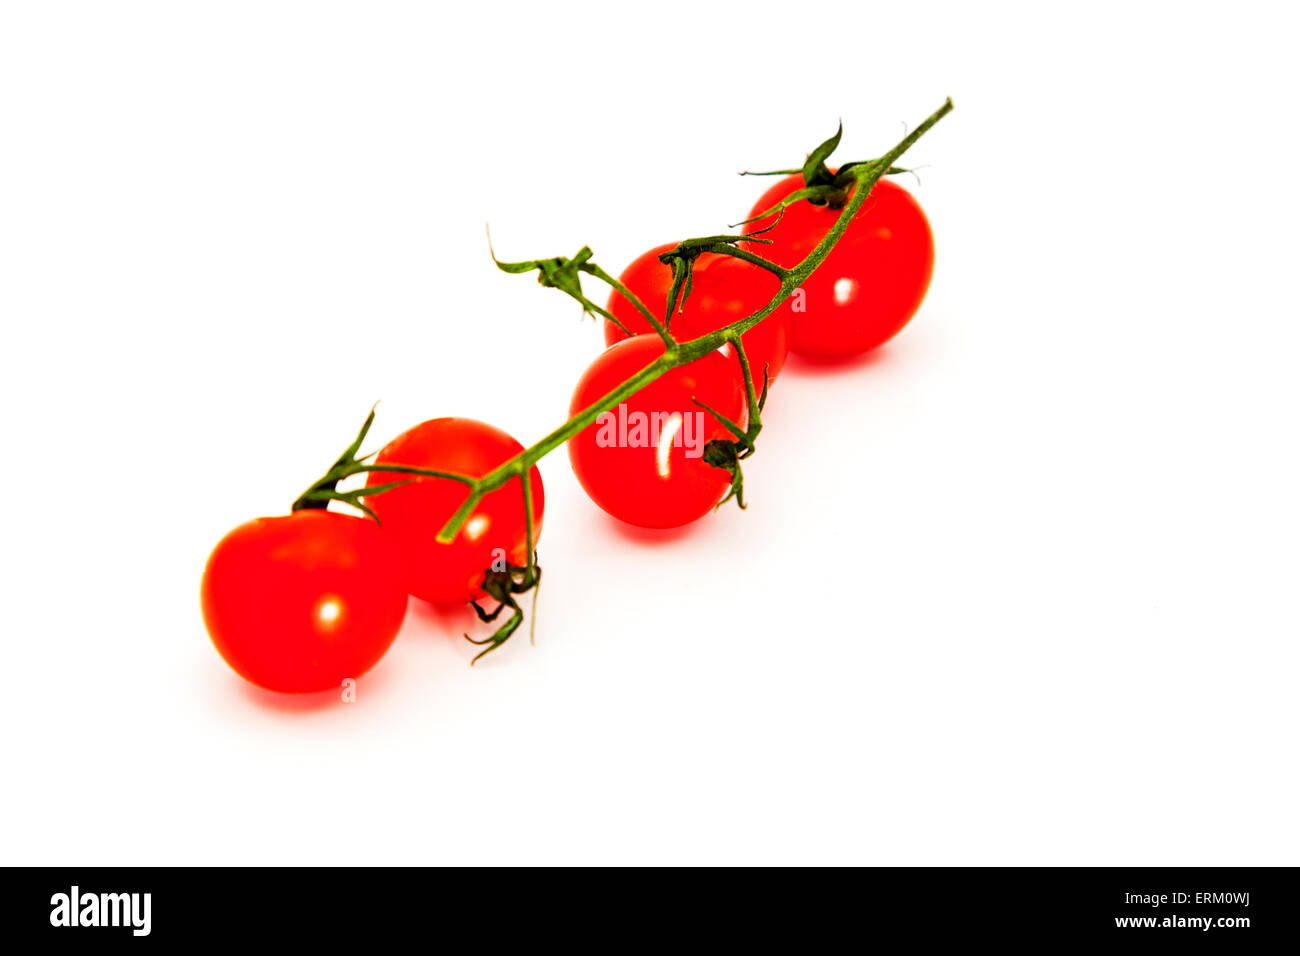 Pomodorini con stelo vite cibo fresco sana opzione biologici rosso pomodoro maturo vegetale intaglio isolato tagliare Foto Stock